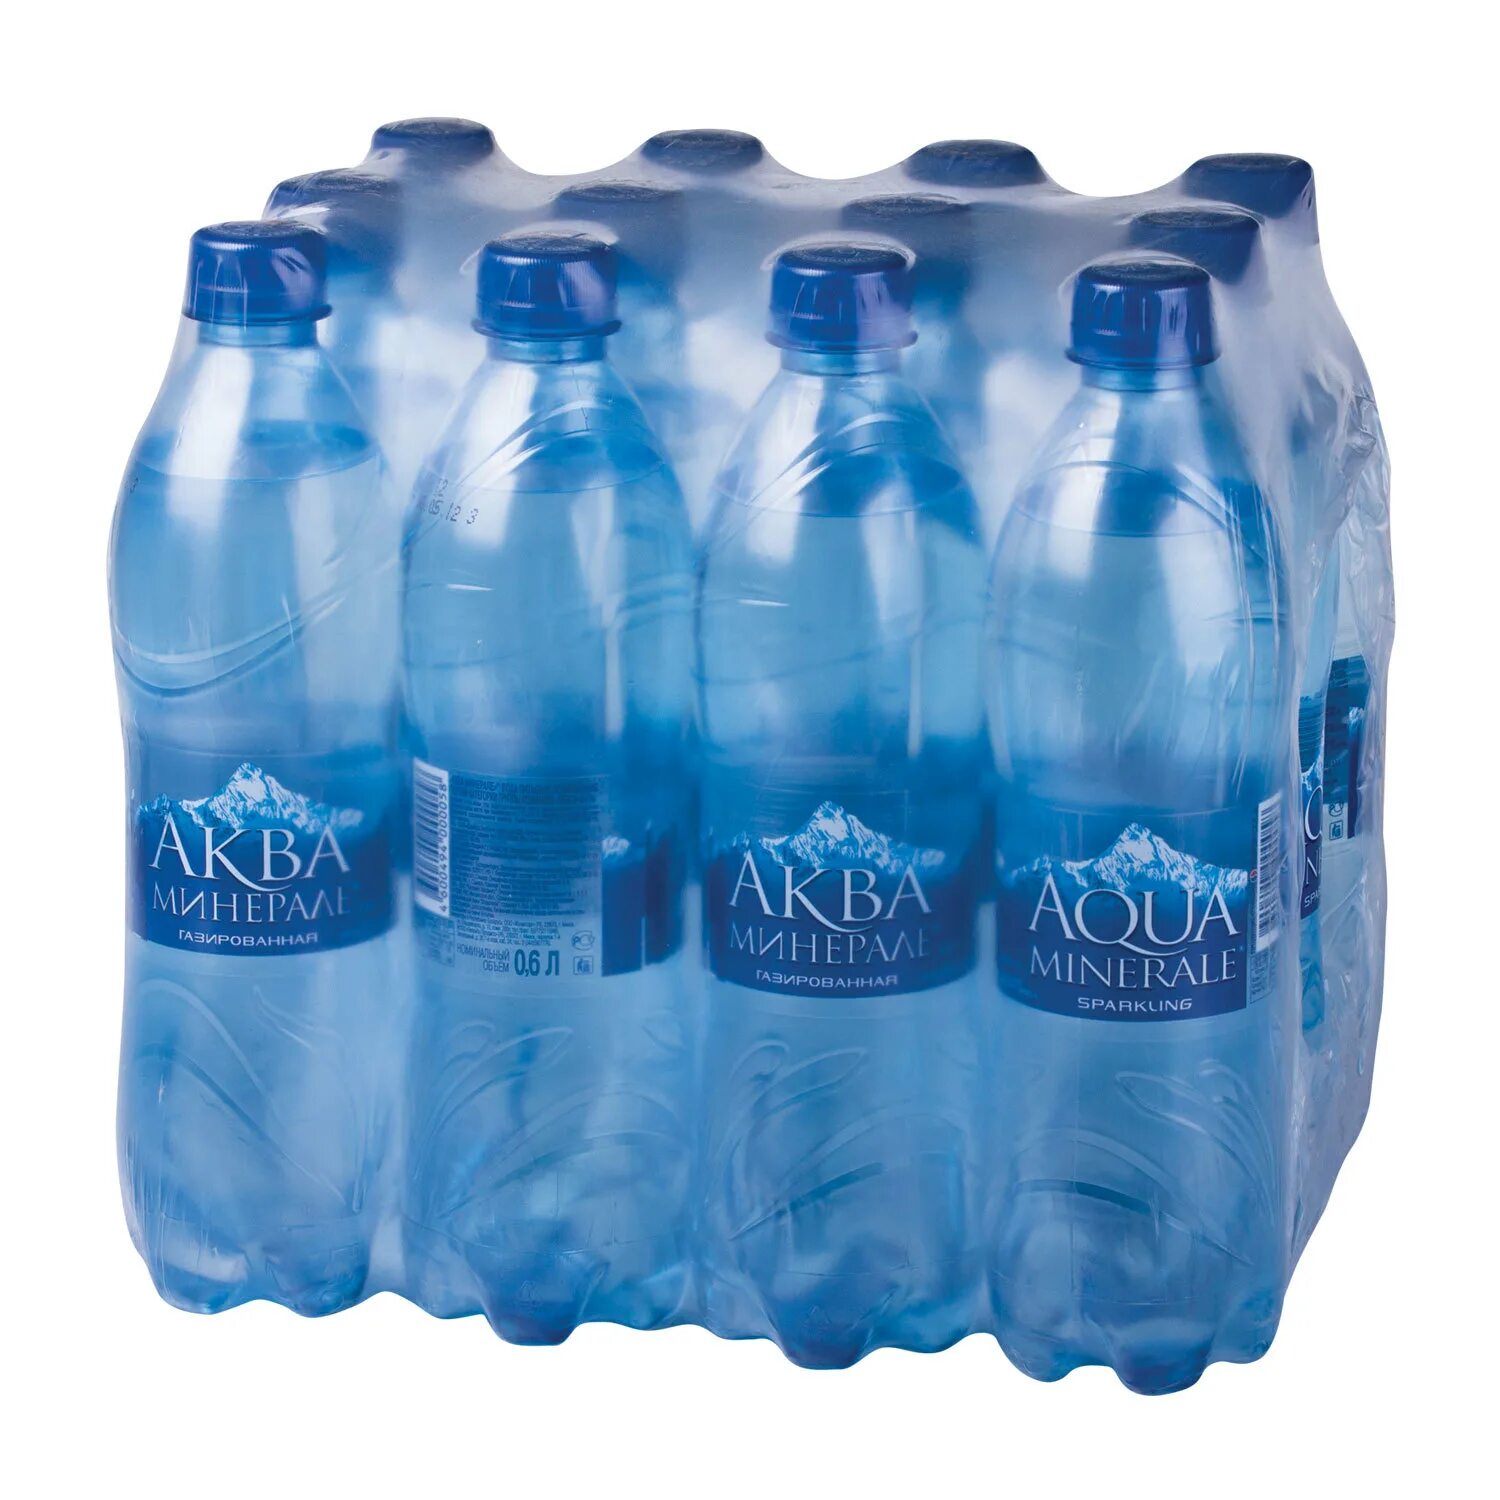 Минеральная вода Aqua minerale. Вода Aqua minerale 5 литров. Минеральная вода газированная, Aqua minerale. Аква Минерале 1.5 литра. Заказ воды недорого